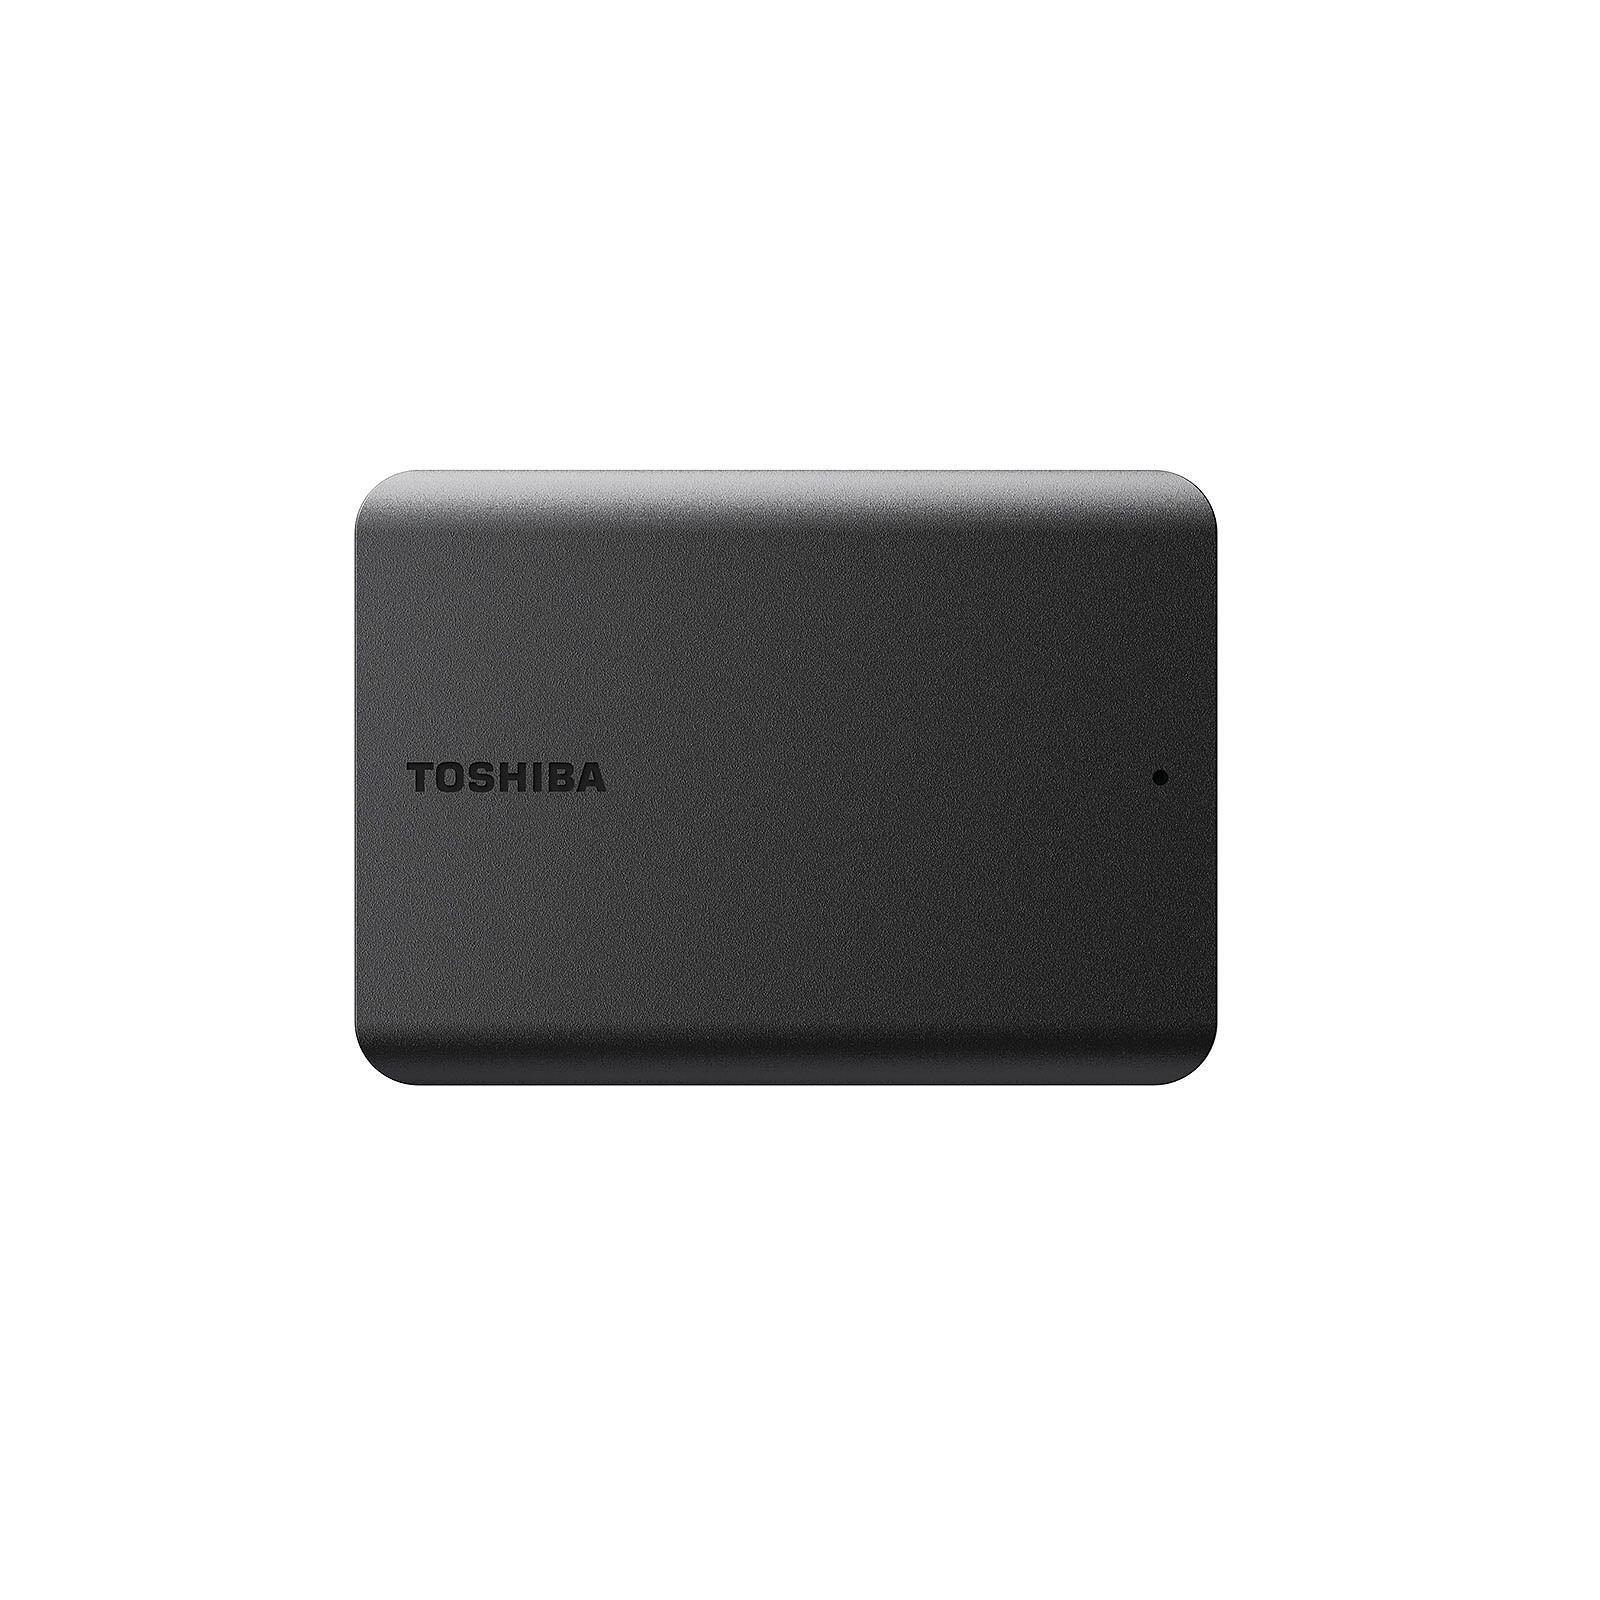 Basics 2 altavoces USB Plug-n-Play para PC o portátil, color negro -  Juego de 2